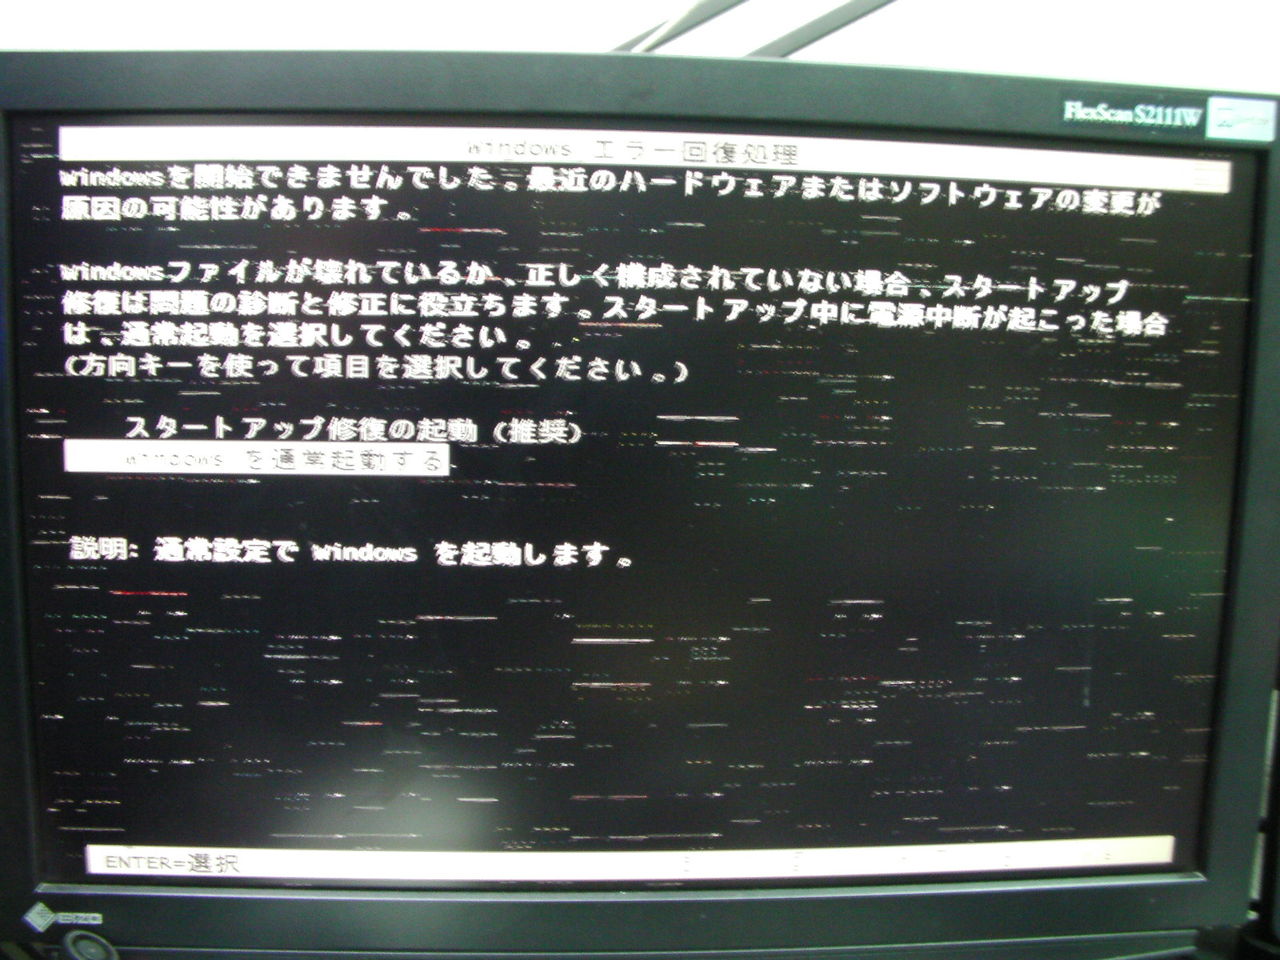 パソコン工房 Lesance Dt 画面表示不良 ワイズのおしごと ワイズ Weisz のブログ